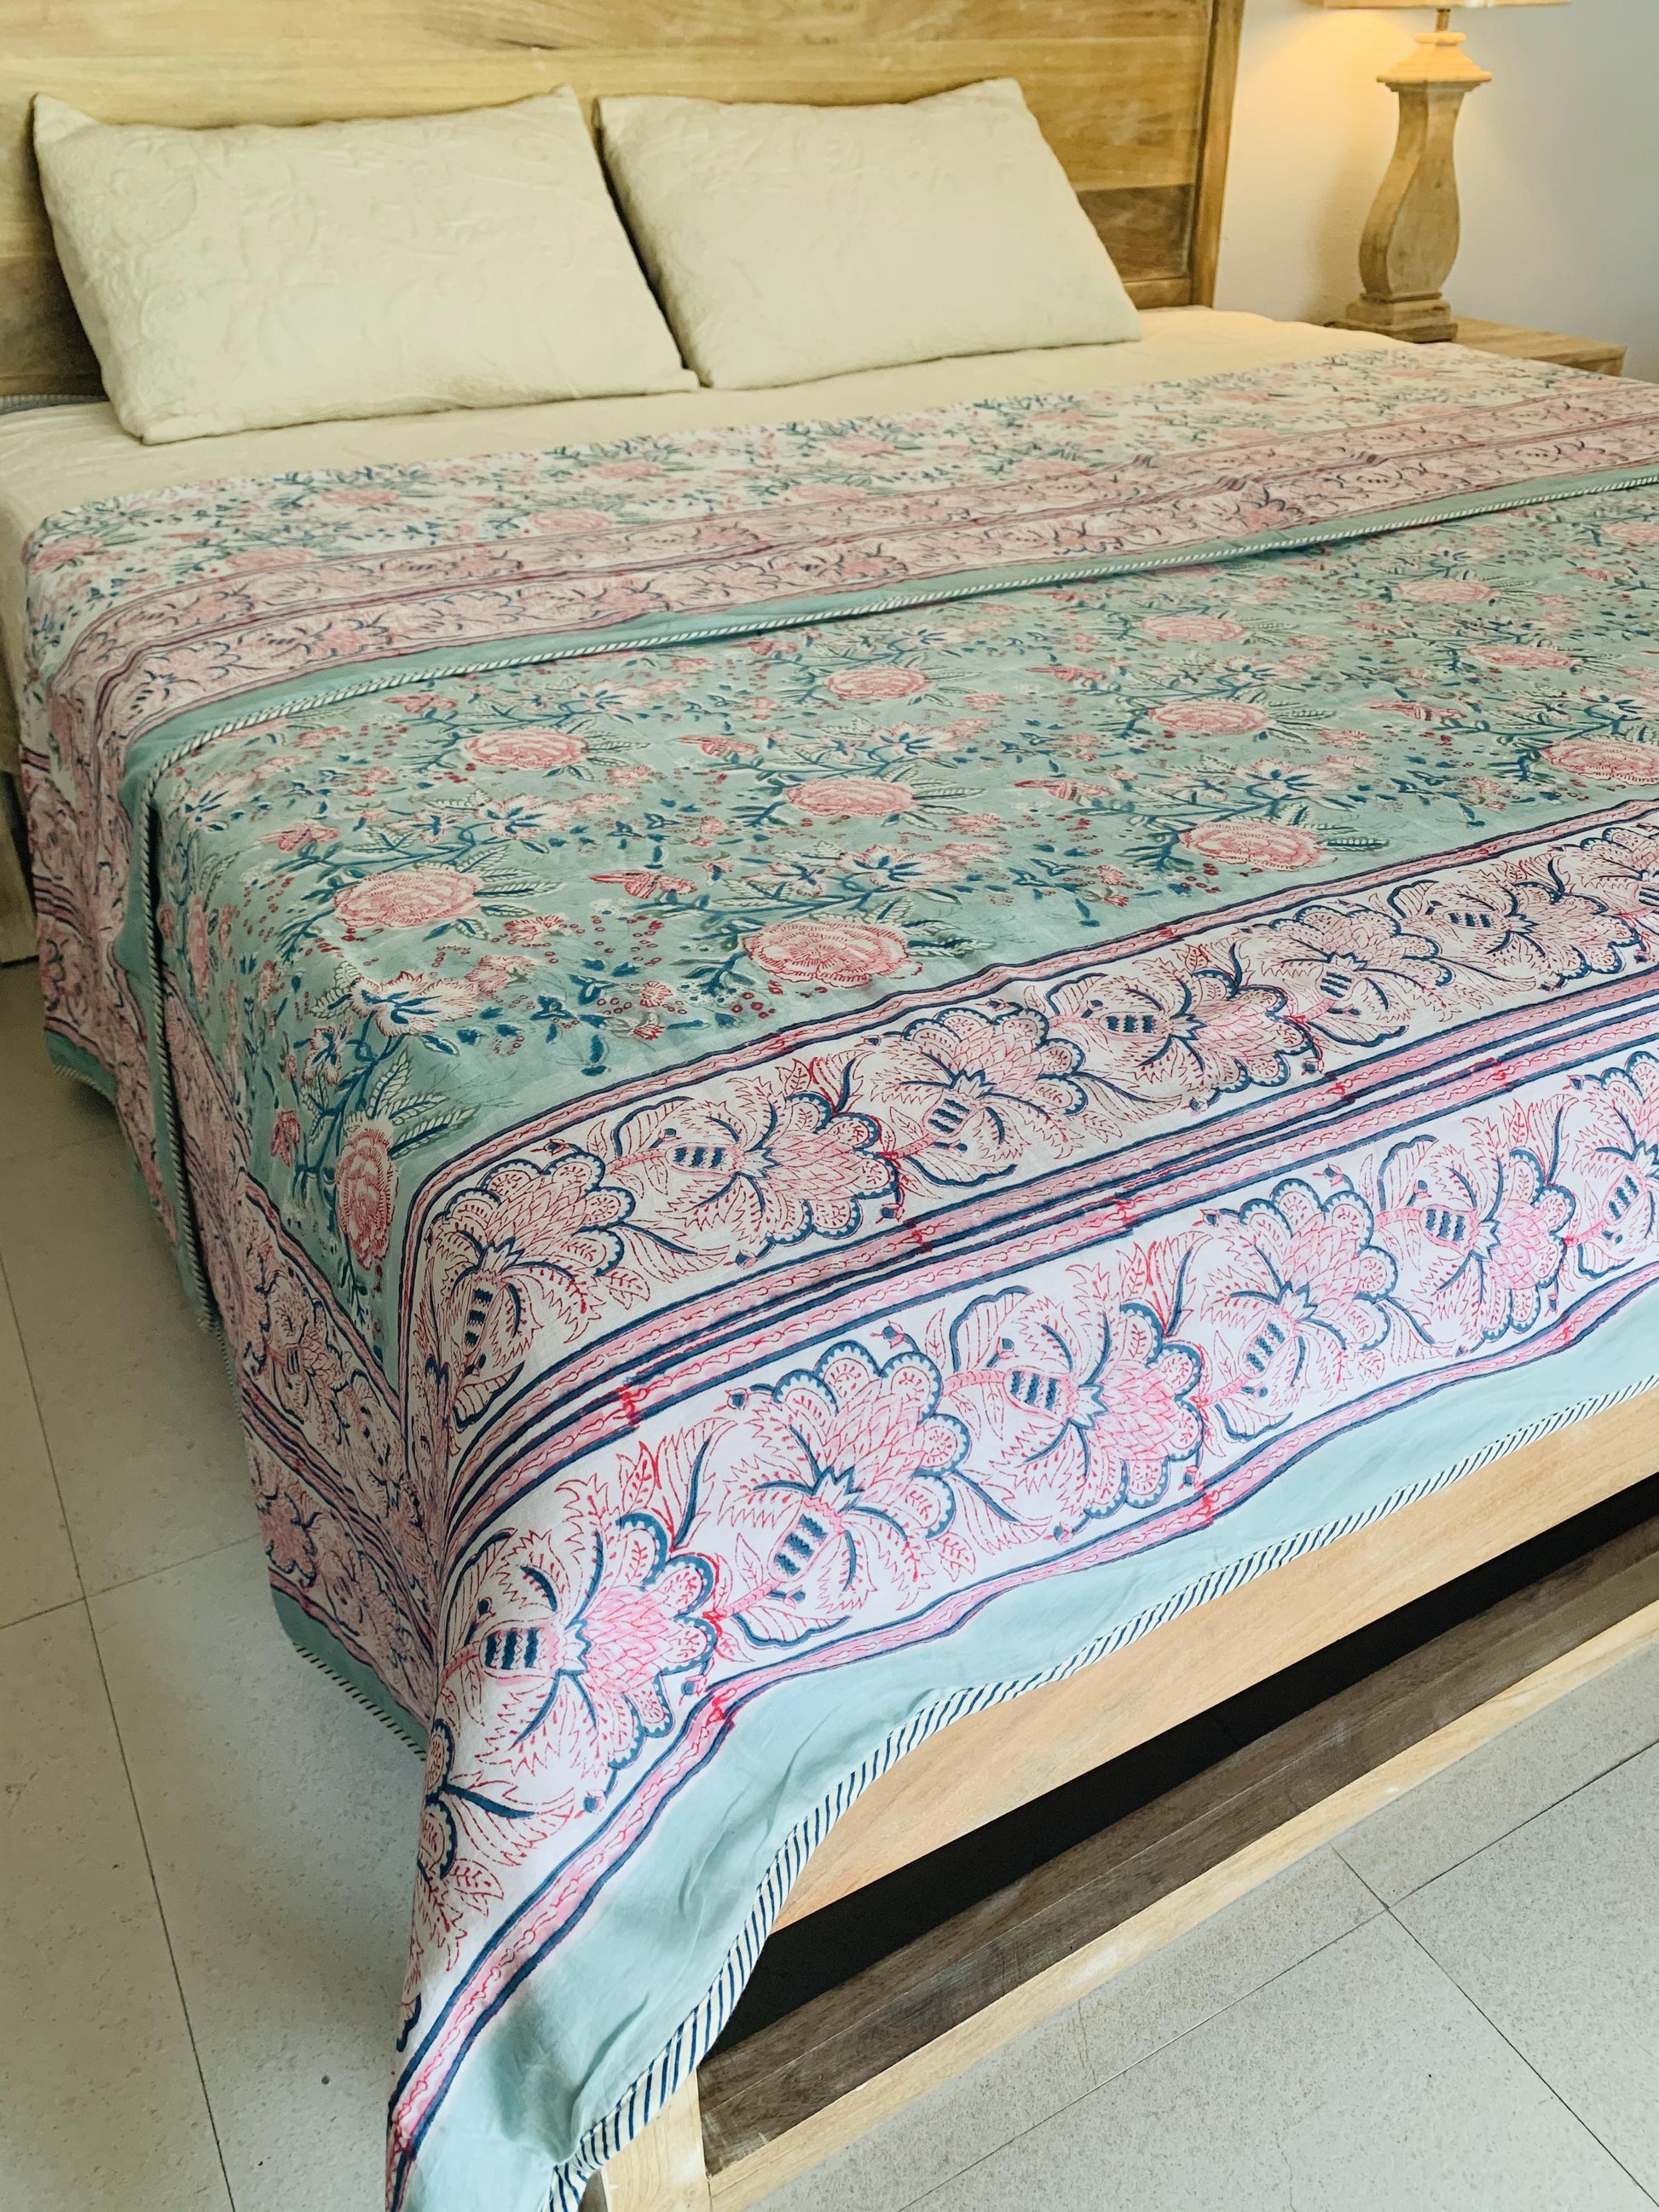 Neelofar's double bed hand block printed comforter